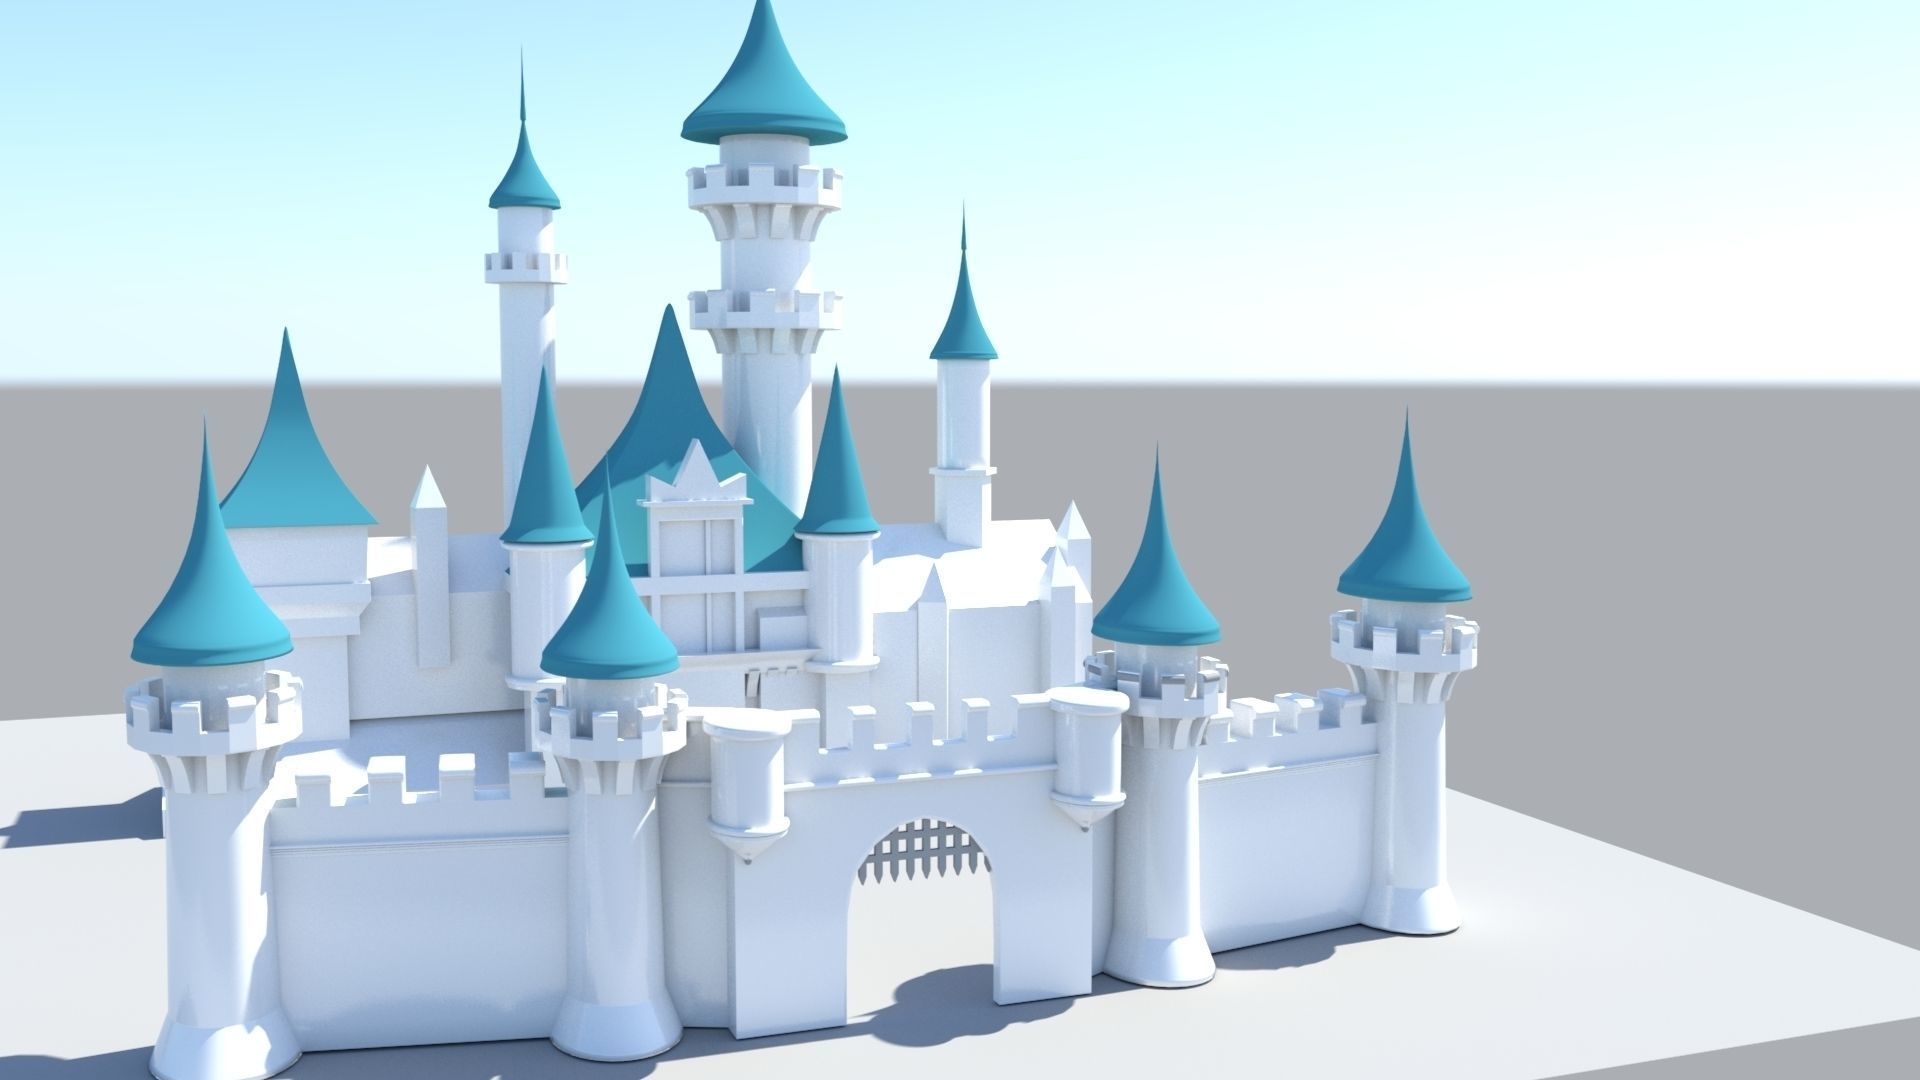 Disney Castle 3D model Download for Free